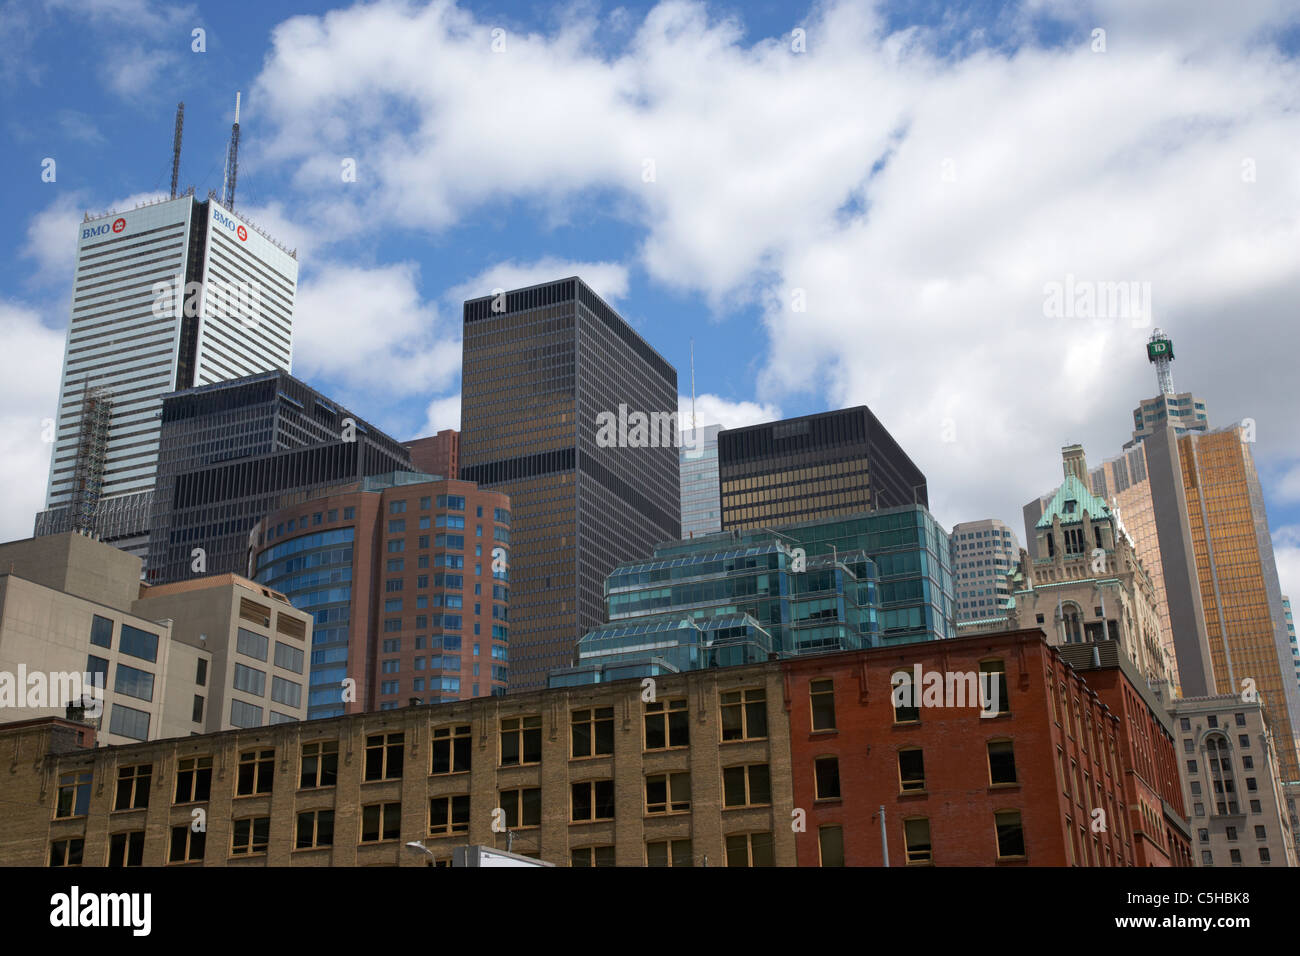 Gratte-ciels et des immeubles de grande hauteur dans le quartier financier de Toronto ontario canada Banque D'Images